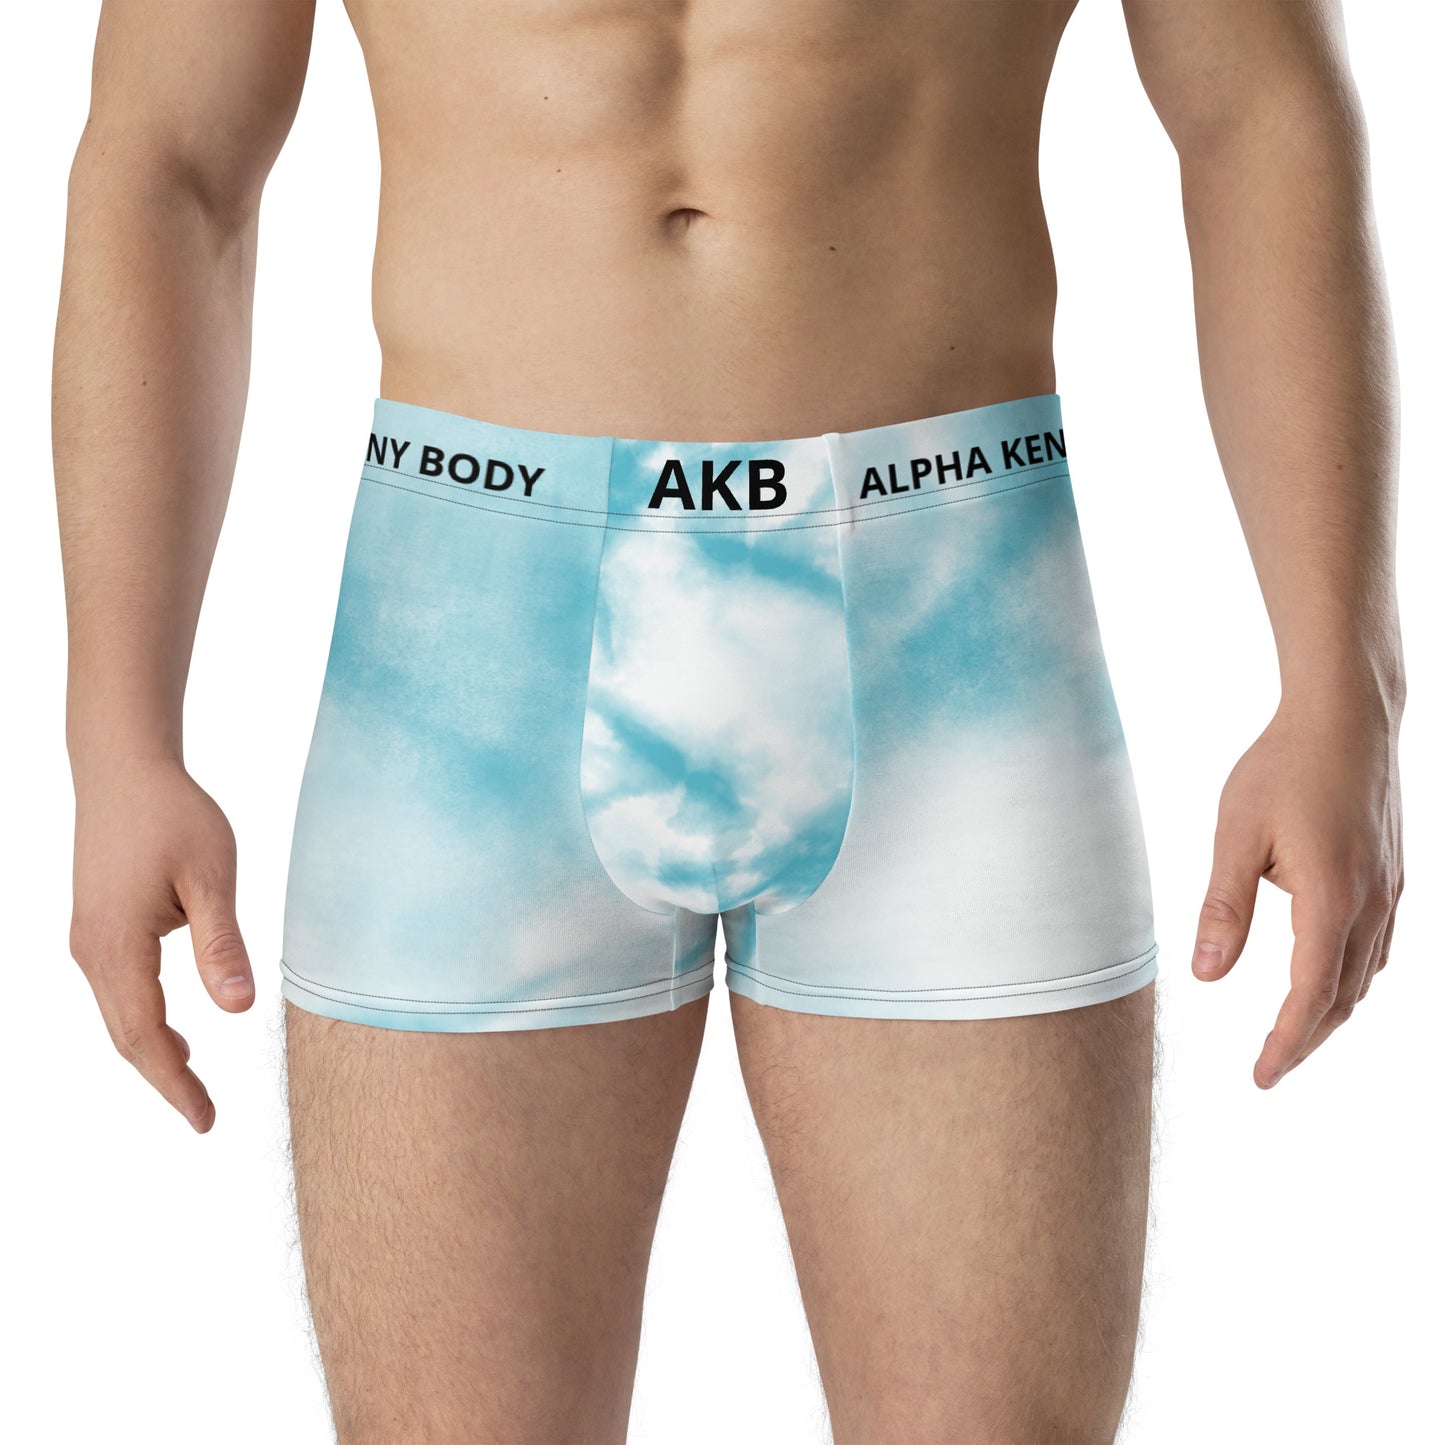 #AKB ALPHA KENNY BODY Boxer Briefs